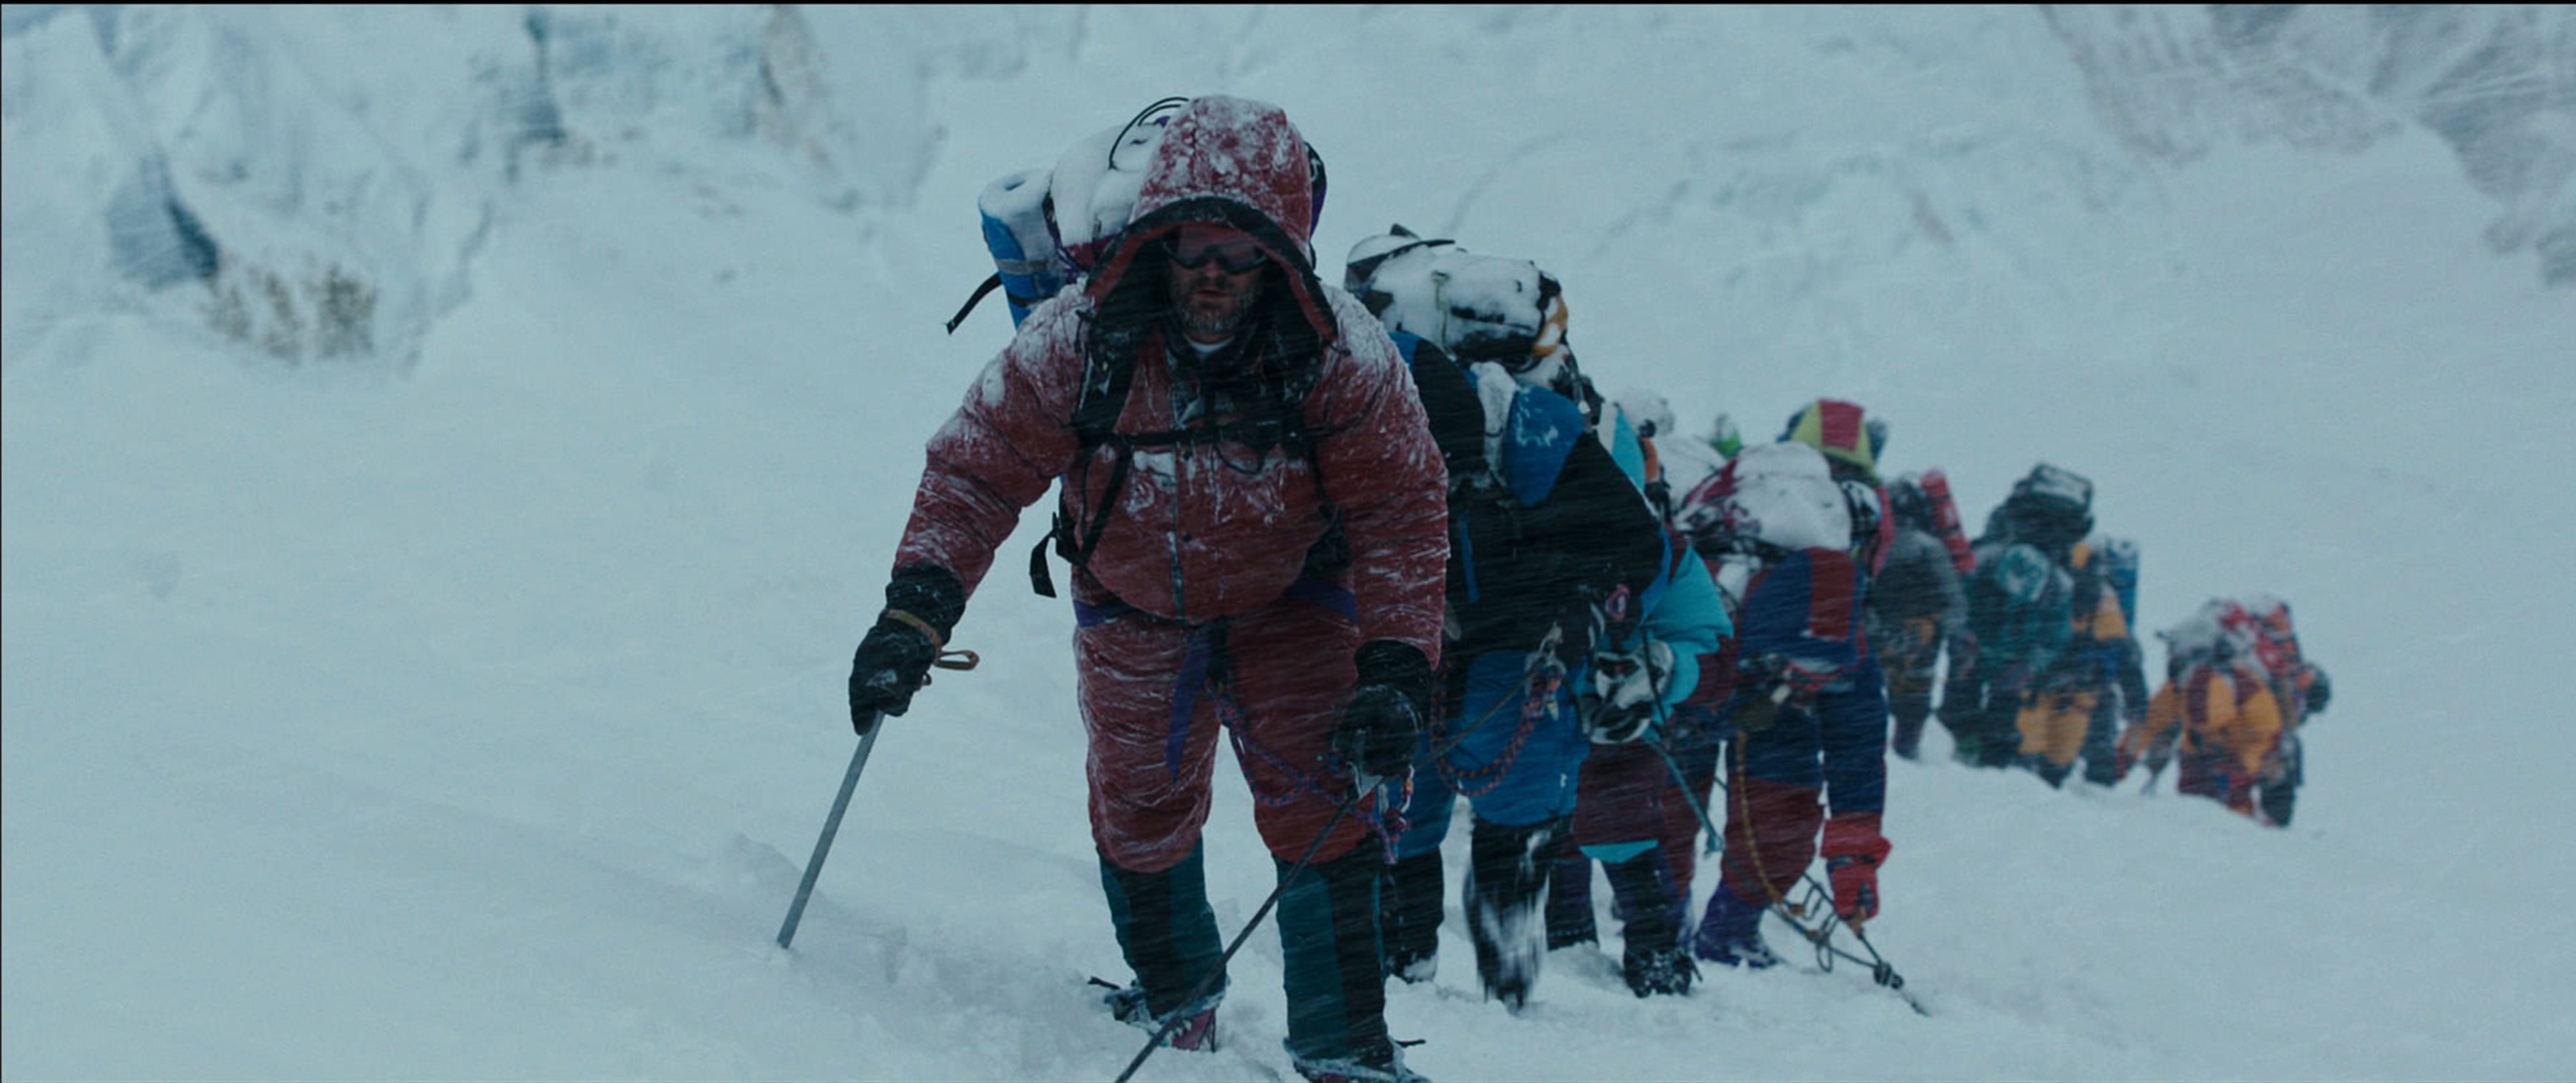 Everest, film: trailer e recensione